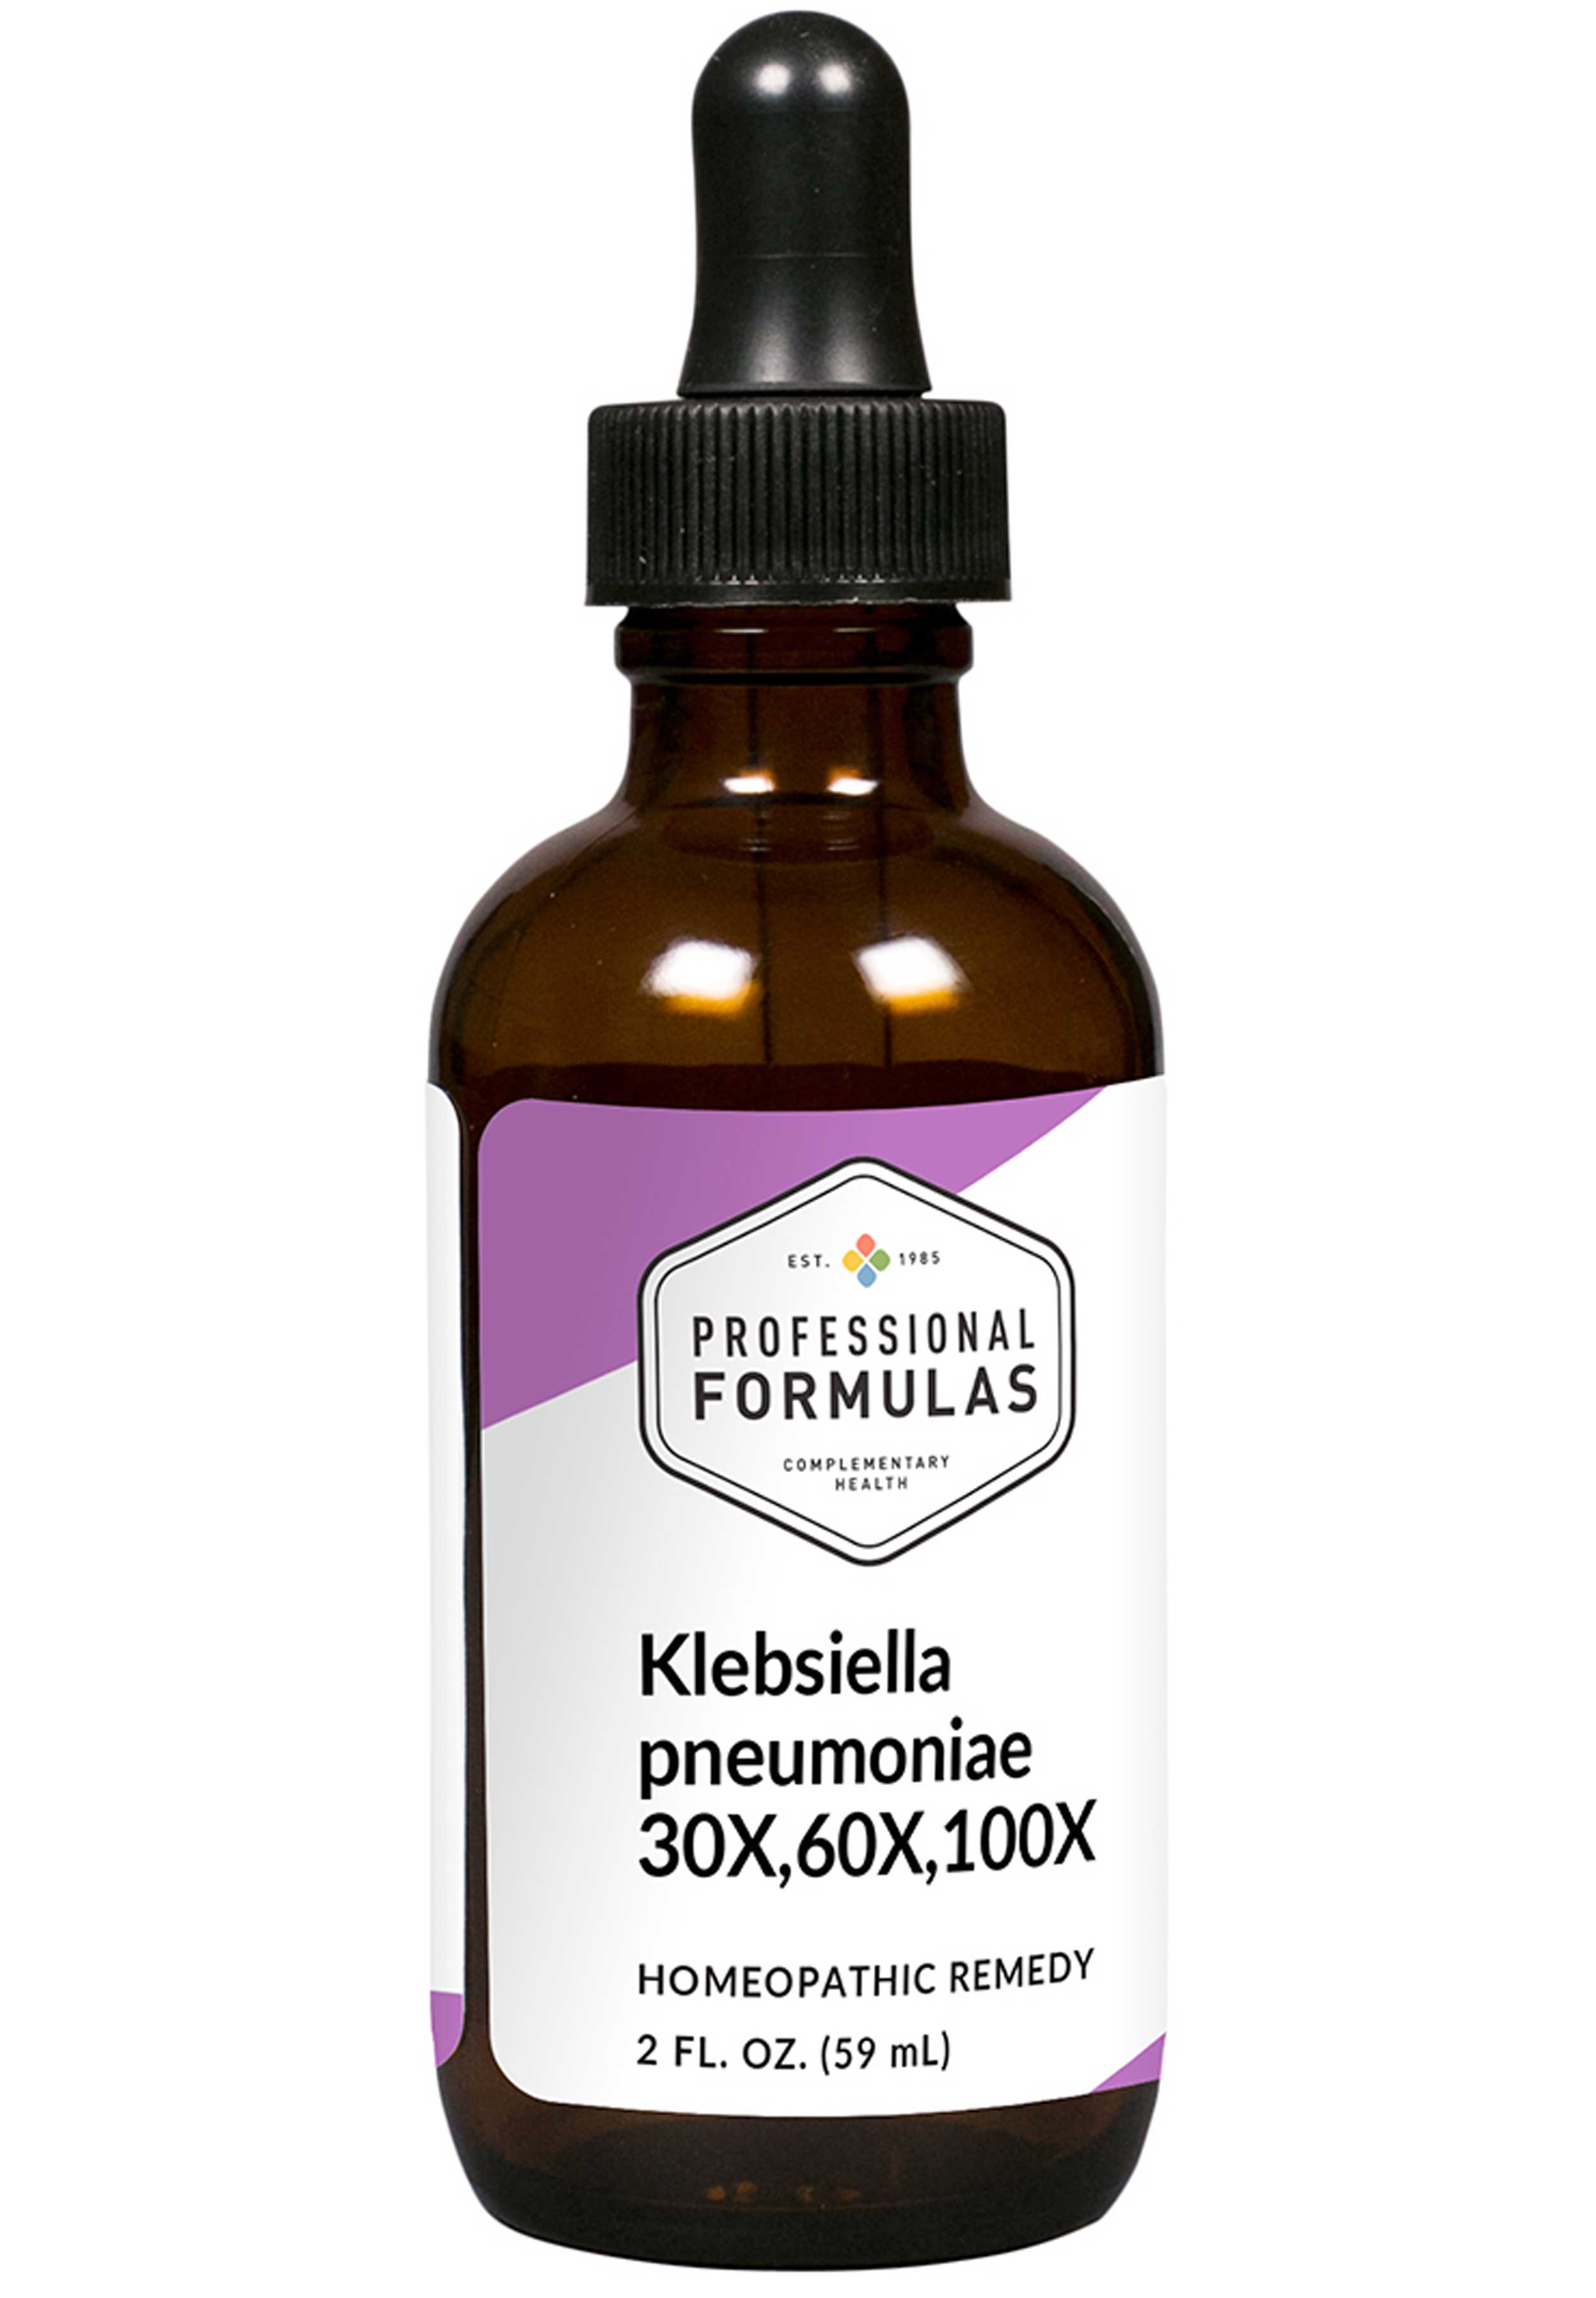 Professional Formulas Klebsiella (30x,60x,100x)